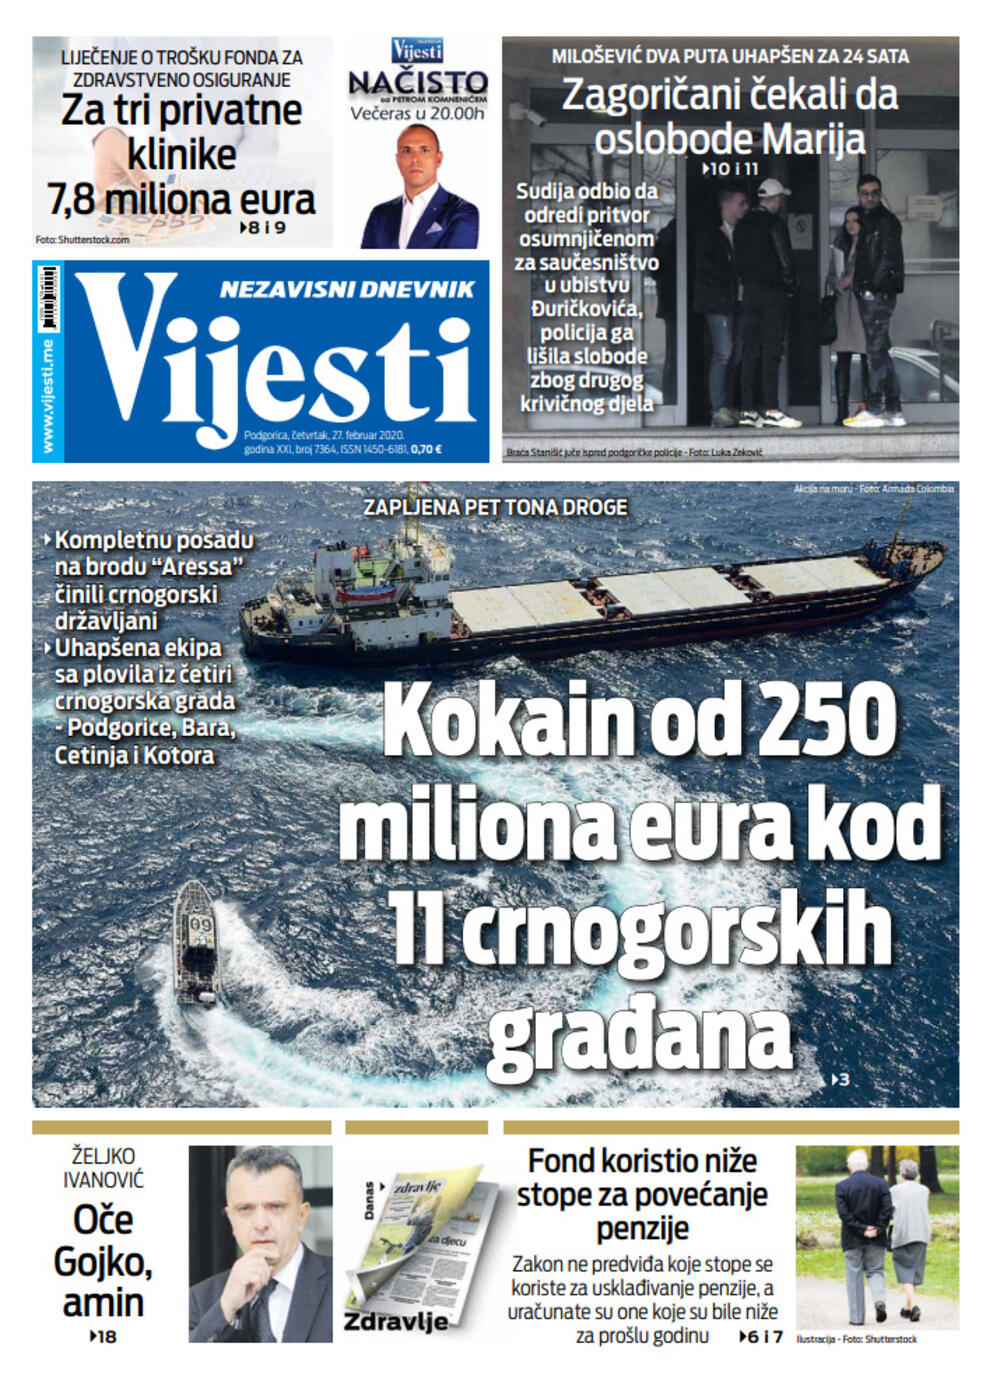 Naslovna strana "Vijesti" za 27. februar 2020.